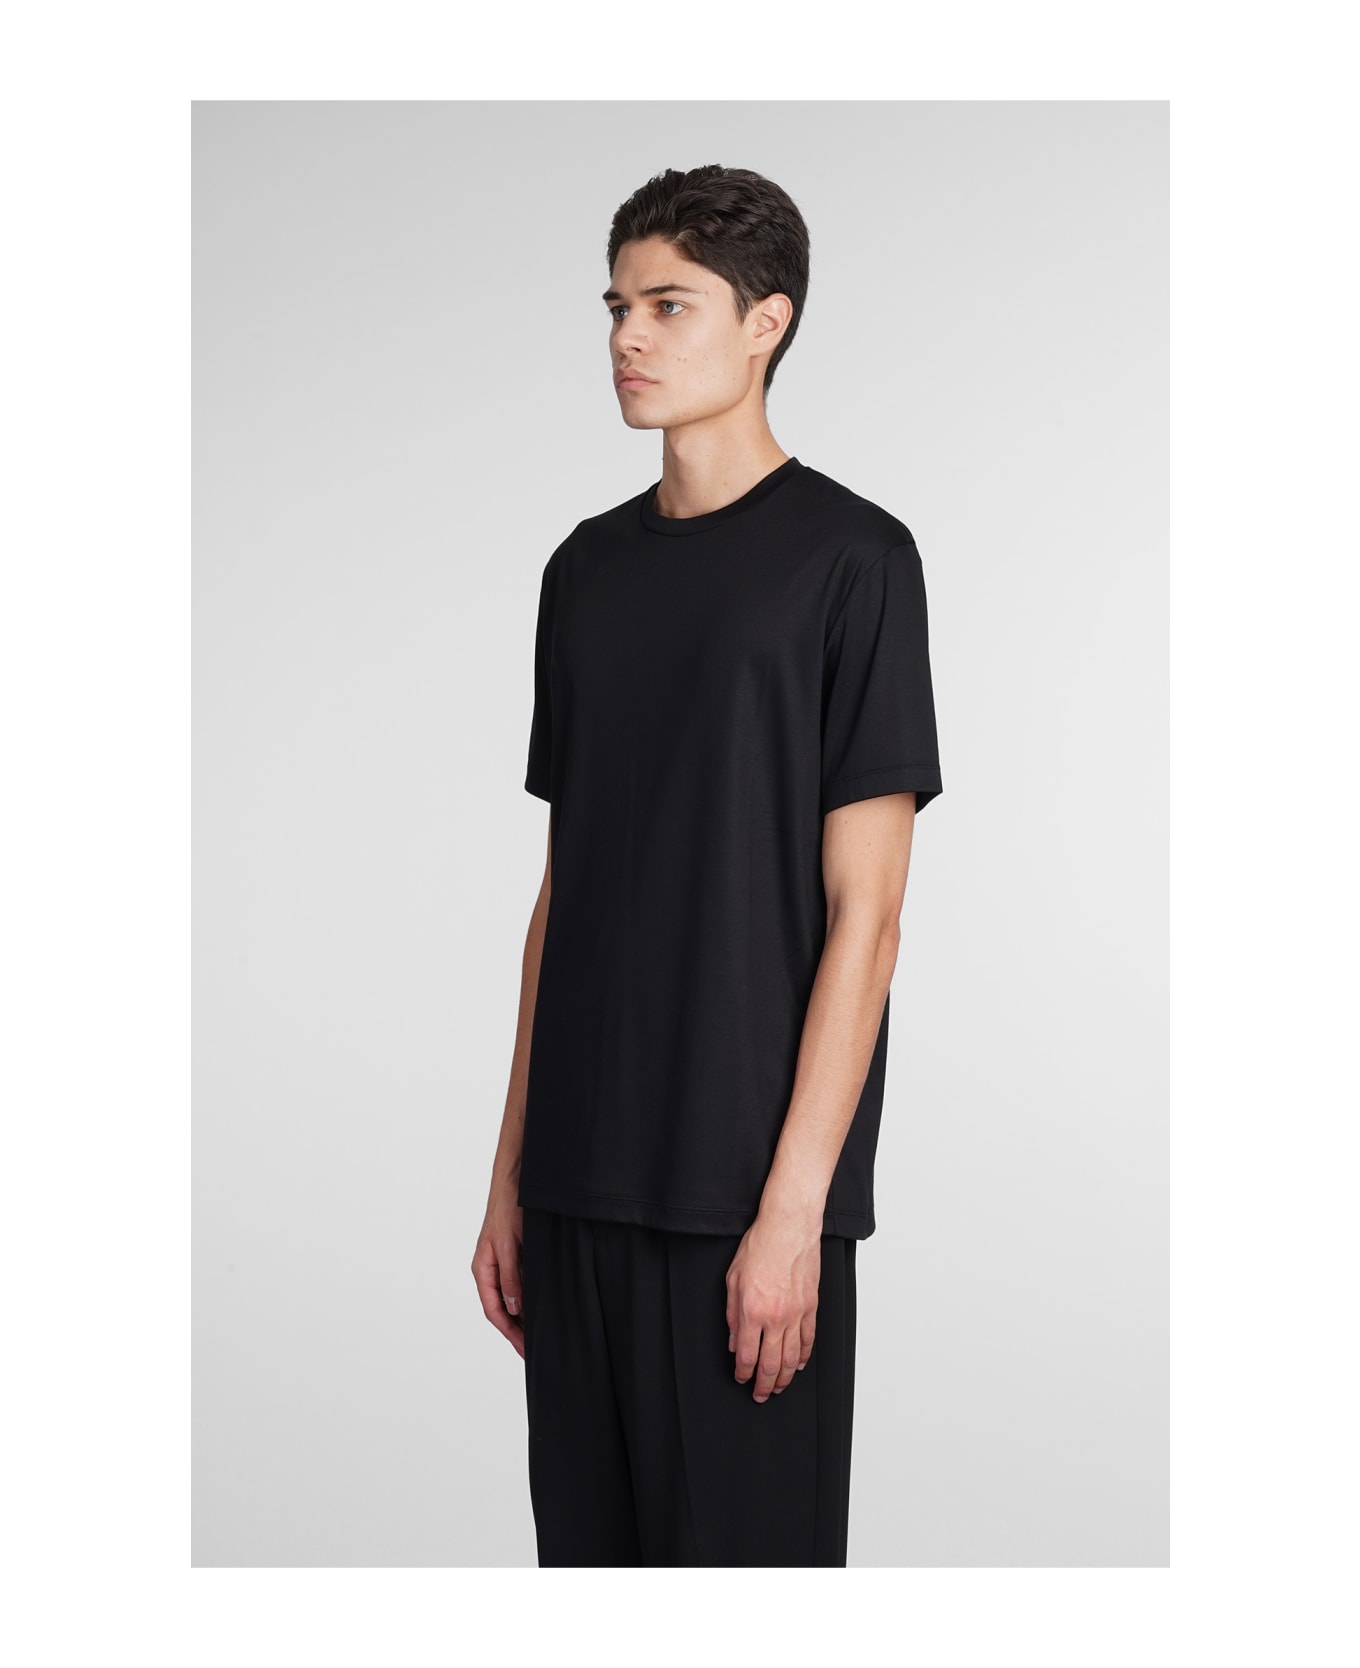 Giorgio Armani T-shirt In Black Cotton - black